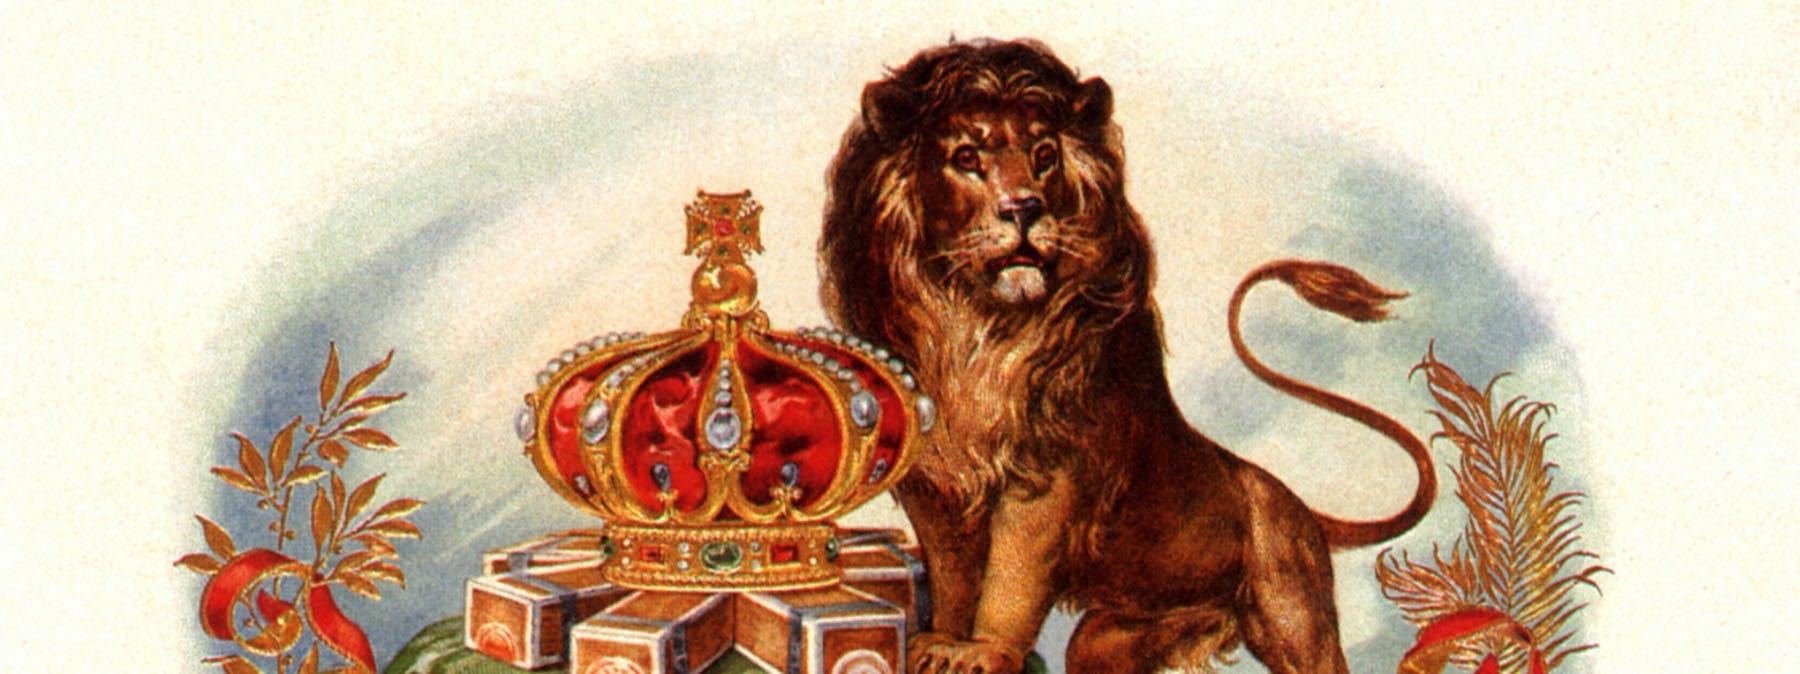 Lion male avec une couronne royale